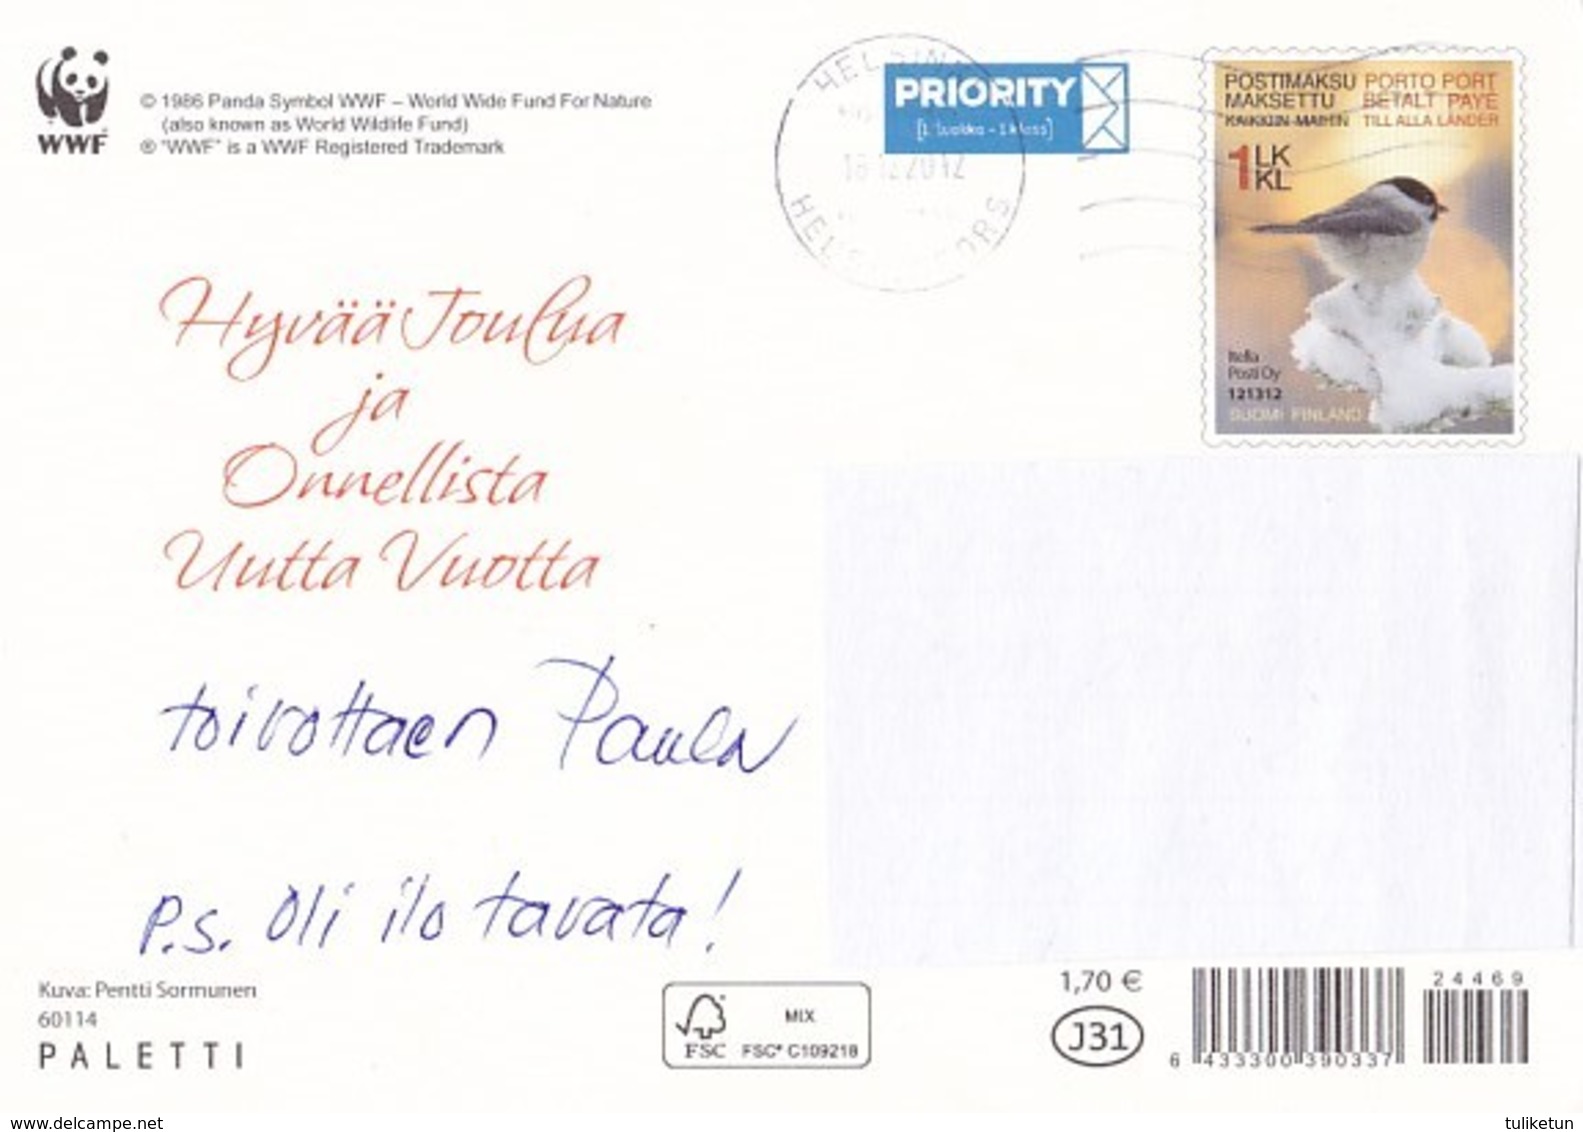 Postal Stationery - Reindeer - Renne - Rendier - Rentier - Renna - Rena - WWF Panda Logo - Suomi Finland - Postage Paid - Ganzsachen